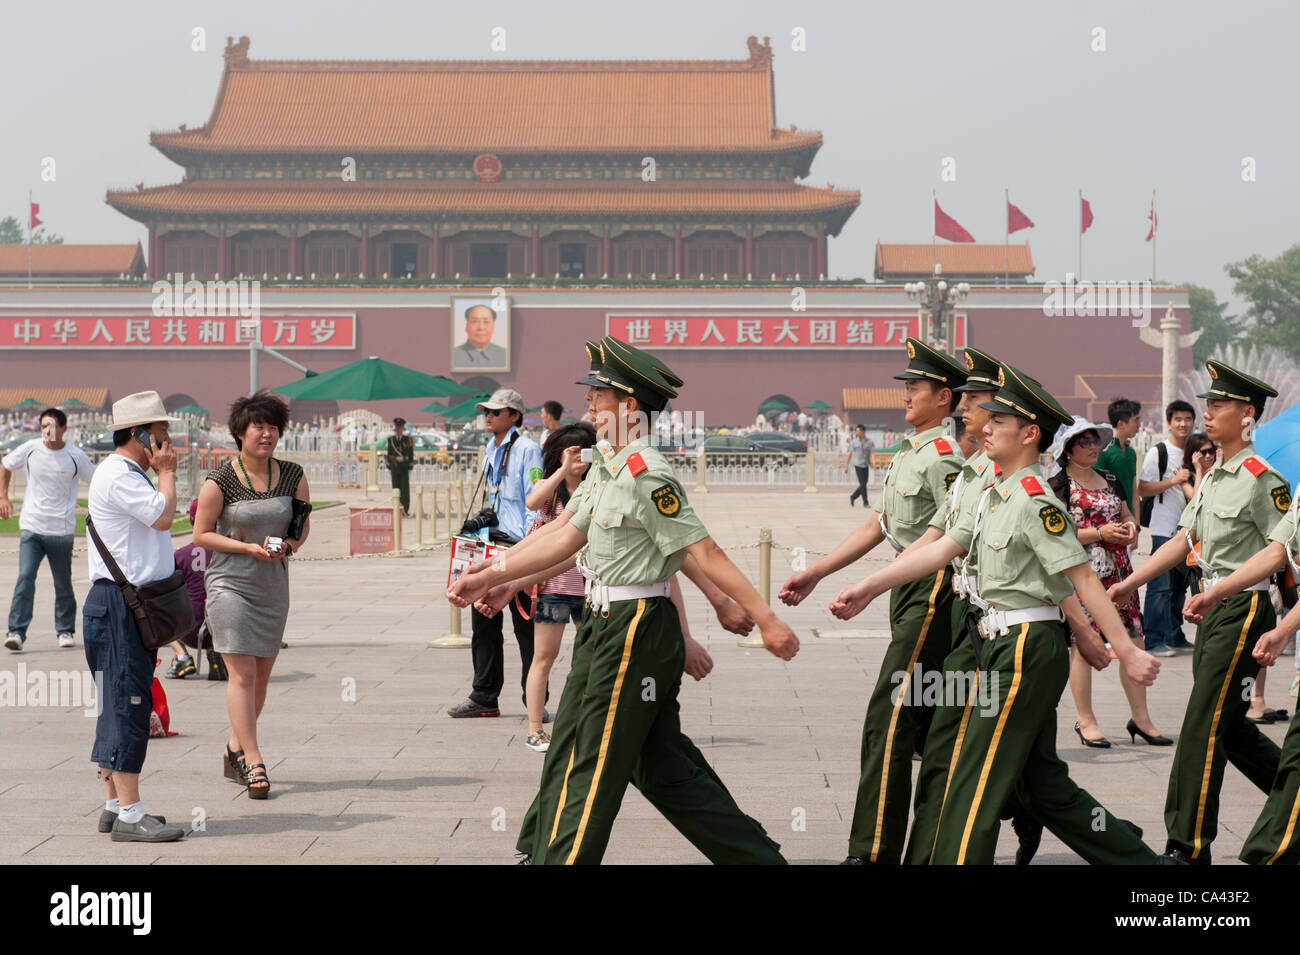 Les gardes militaires défilant sur la Place Tiananmen, Beijing, Chine le lundi 4 juin 2012. La sécurité est serrée sur la place Tiananmen, le 4 juin 2012 marque le 23e anniversaire de la répression militaire des manifestations des étudiants de la place Tiananmen en 1989. Banque D'Images